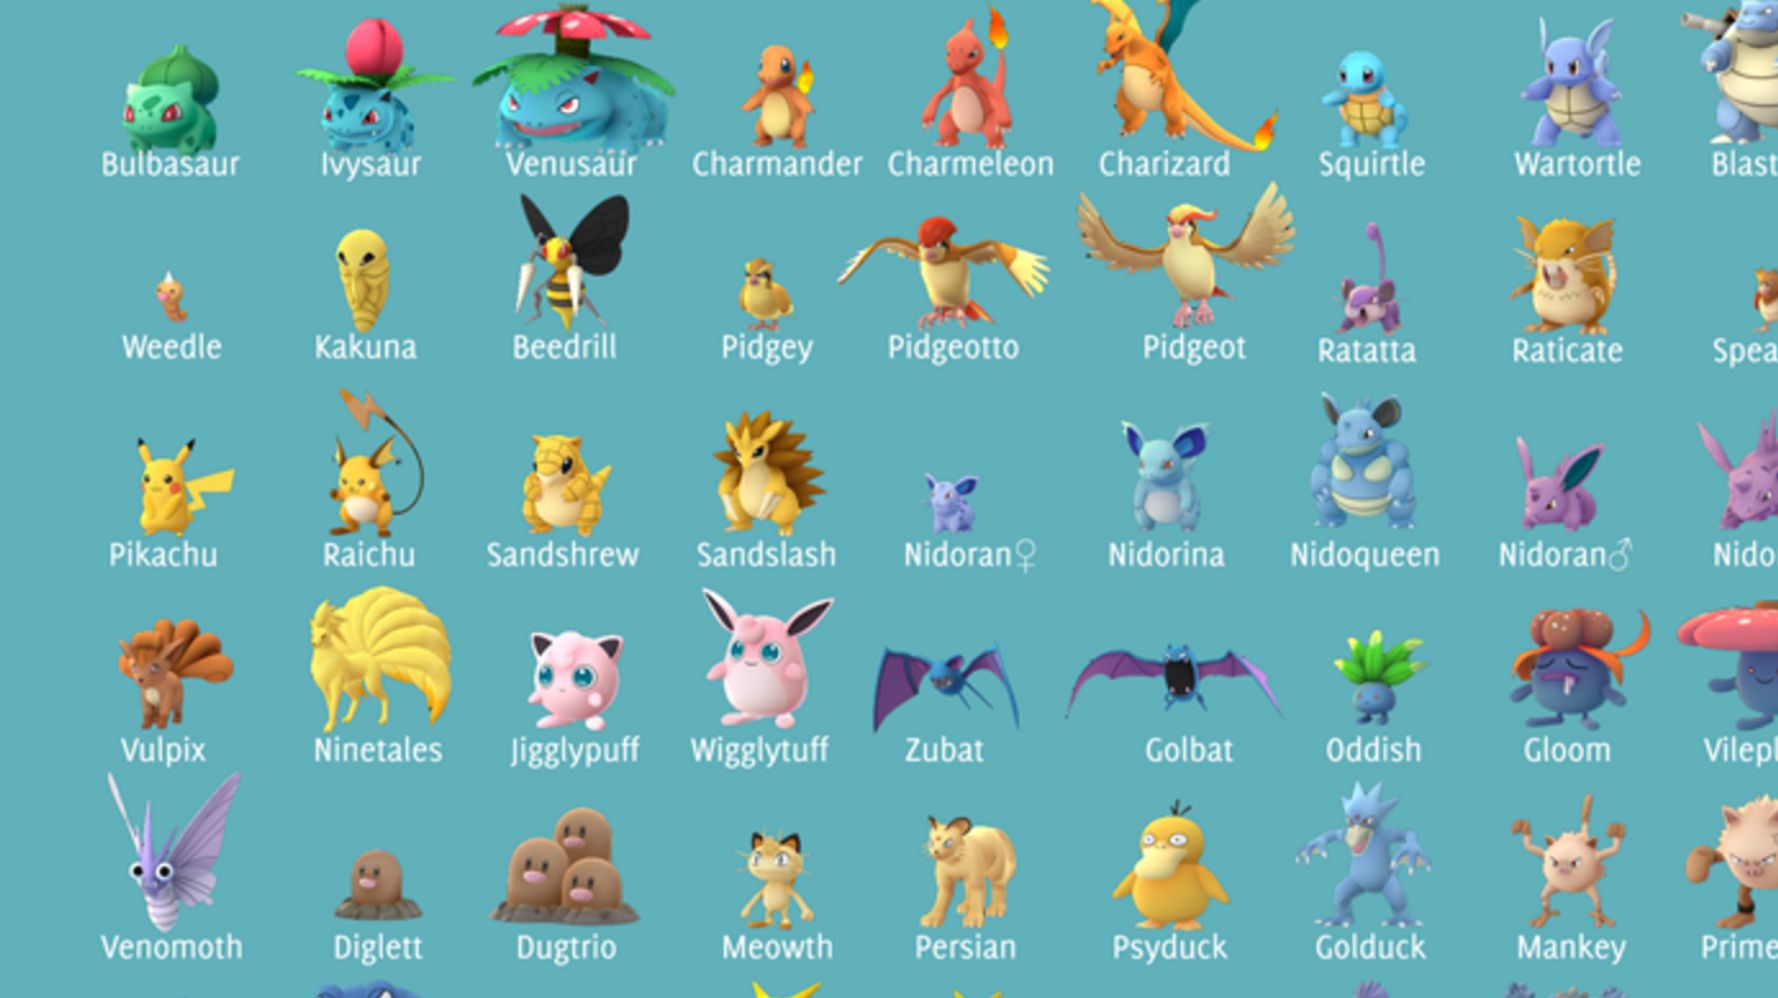 Pokemon Go Tip Complete Pokedex Silhouette Chart For All 151 Pokemon Huffpost Uk Tech